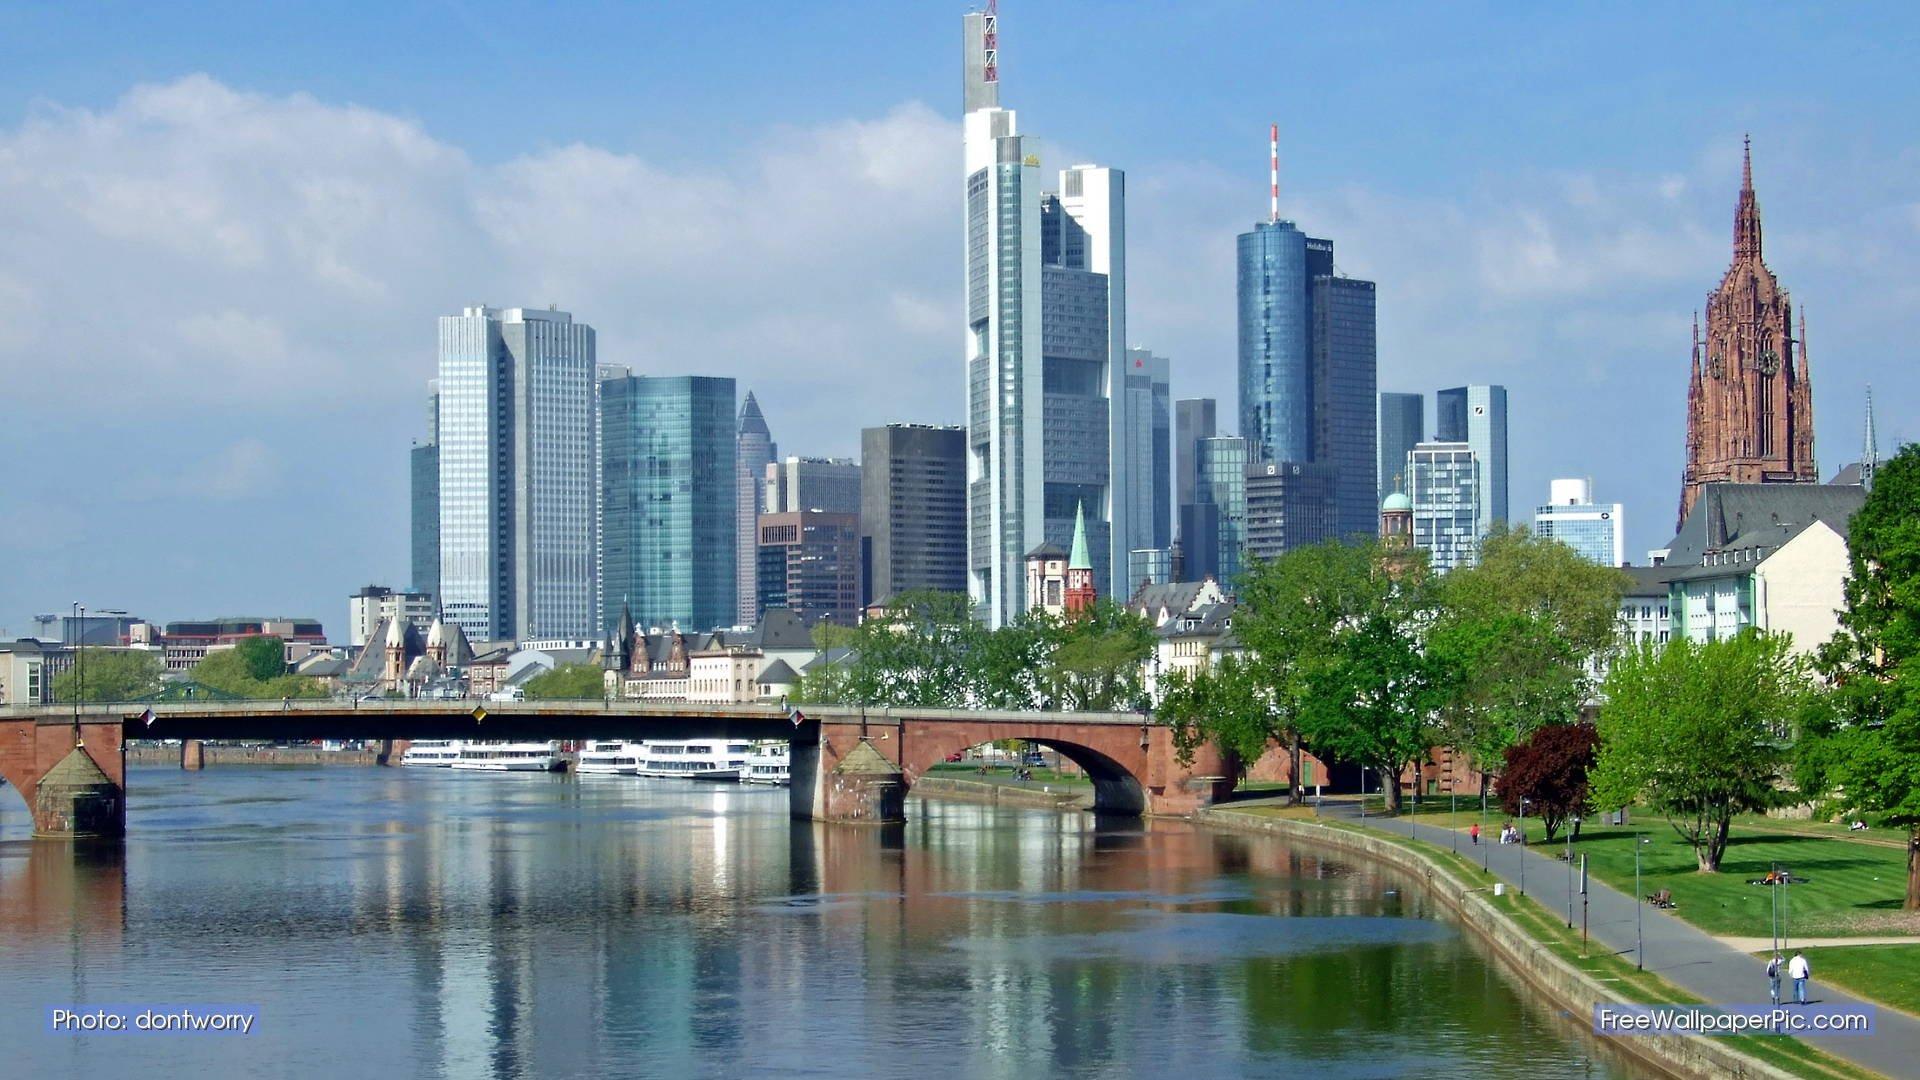 Frankfurt Am Main , HD Wallpaper & Backgrounds